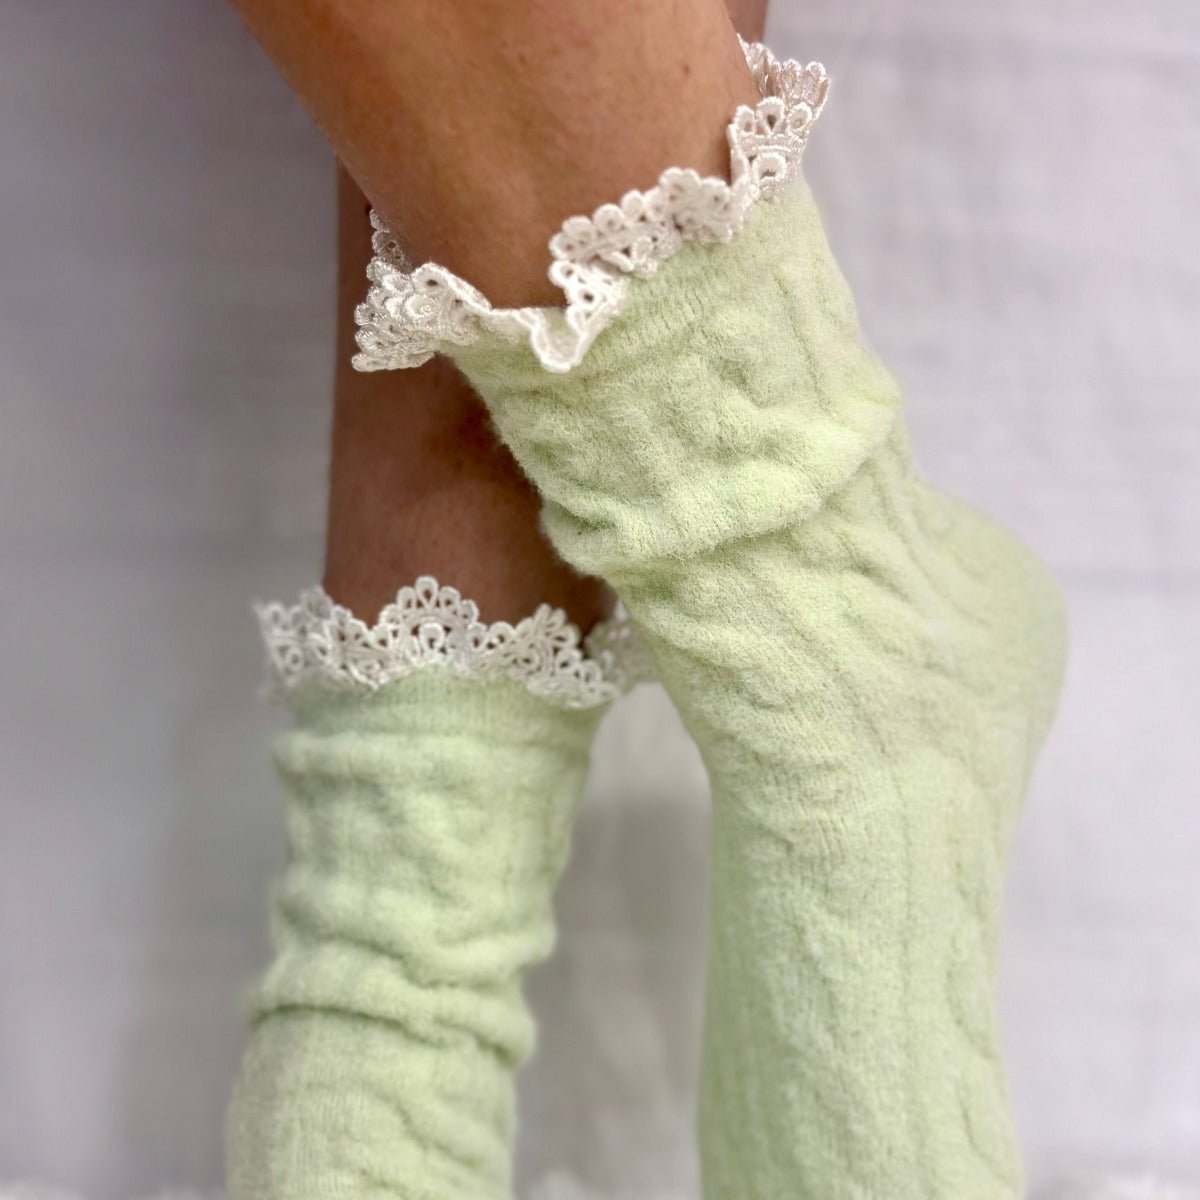 HEAVENLY ultra soft cozy lounge sock women's - mint